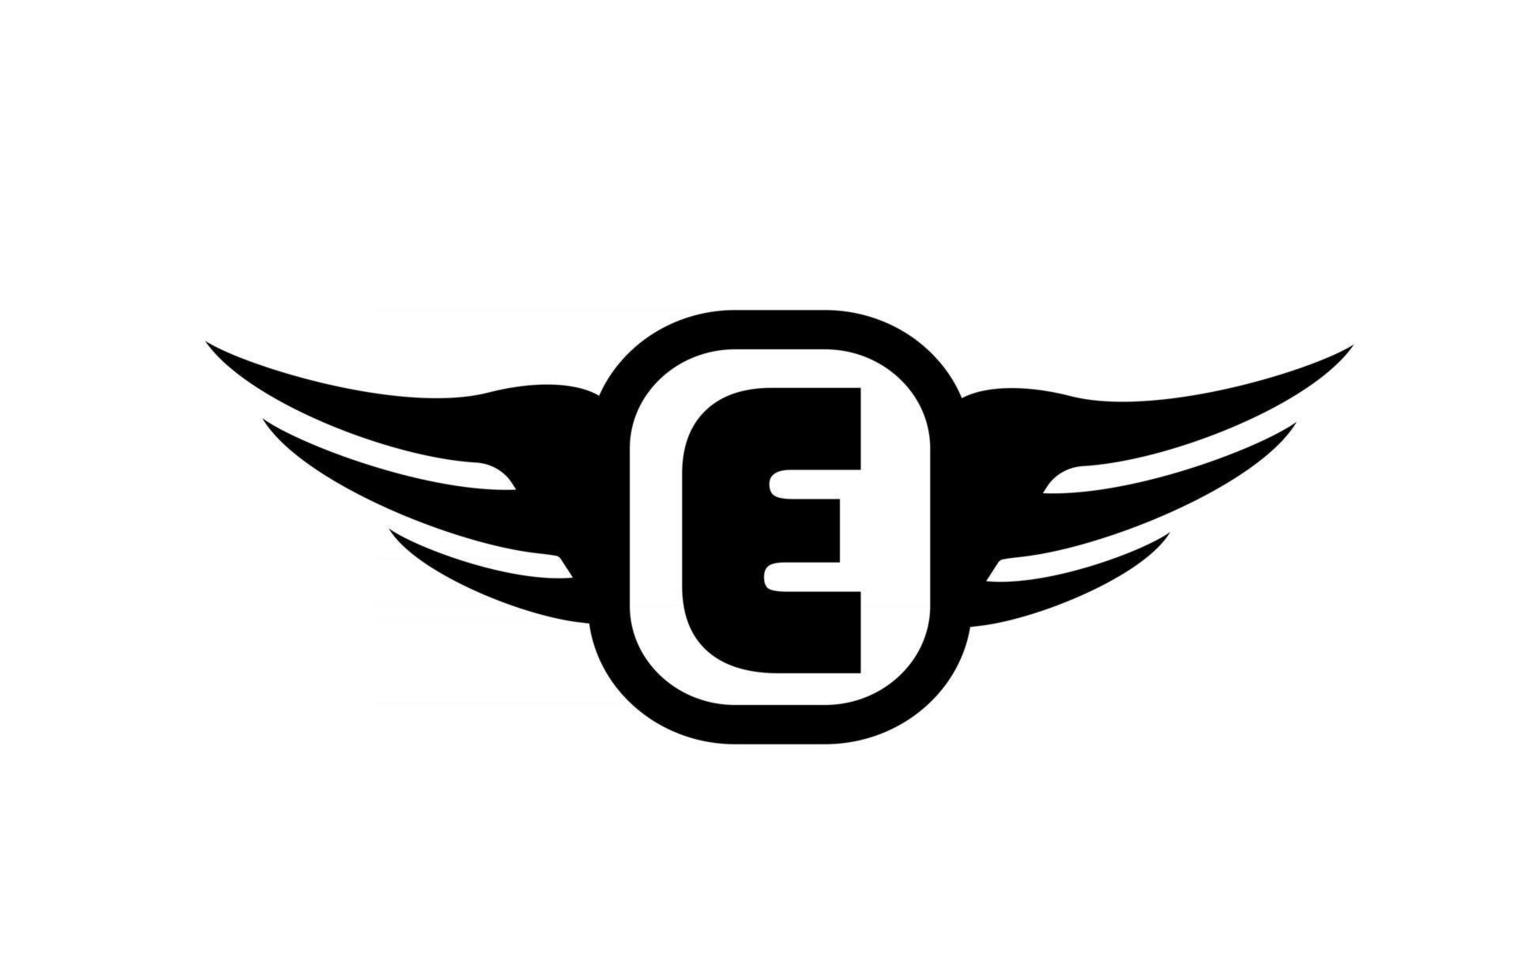 Logo de letra del alfabeto e para negocios y empresa con alas y color blanco y negro. icono de rotulación y marca corporativa con diseño simple vector